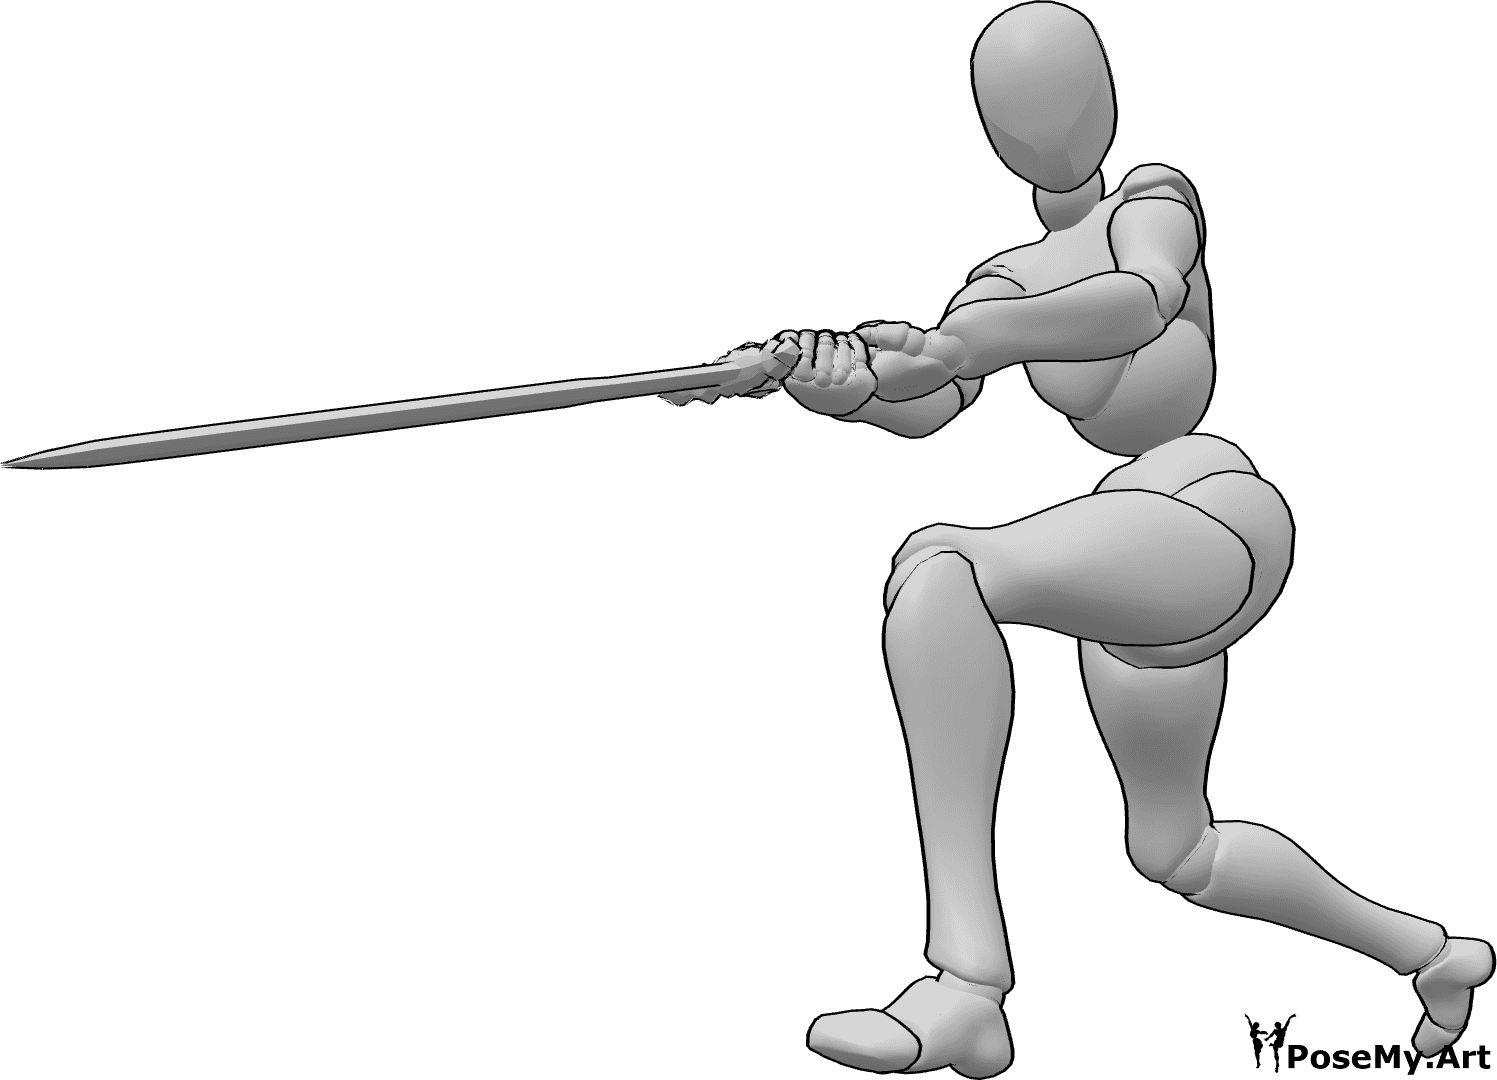 Posen-Referenz- Weibliche Pose mit schwingendem Schwert - Frau hält das Schwert mit beiden Händen, Blick nach links, weibliche Schwertschwinger-Pose